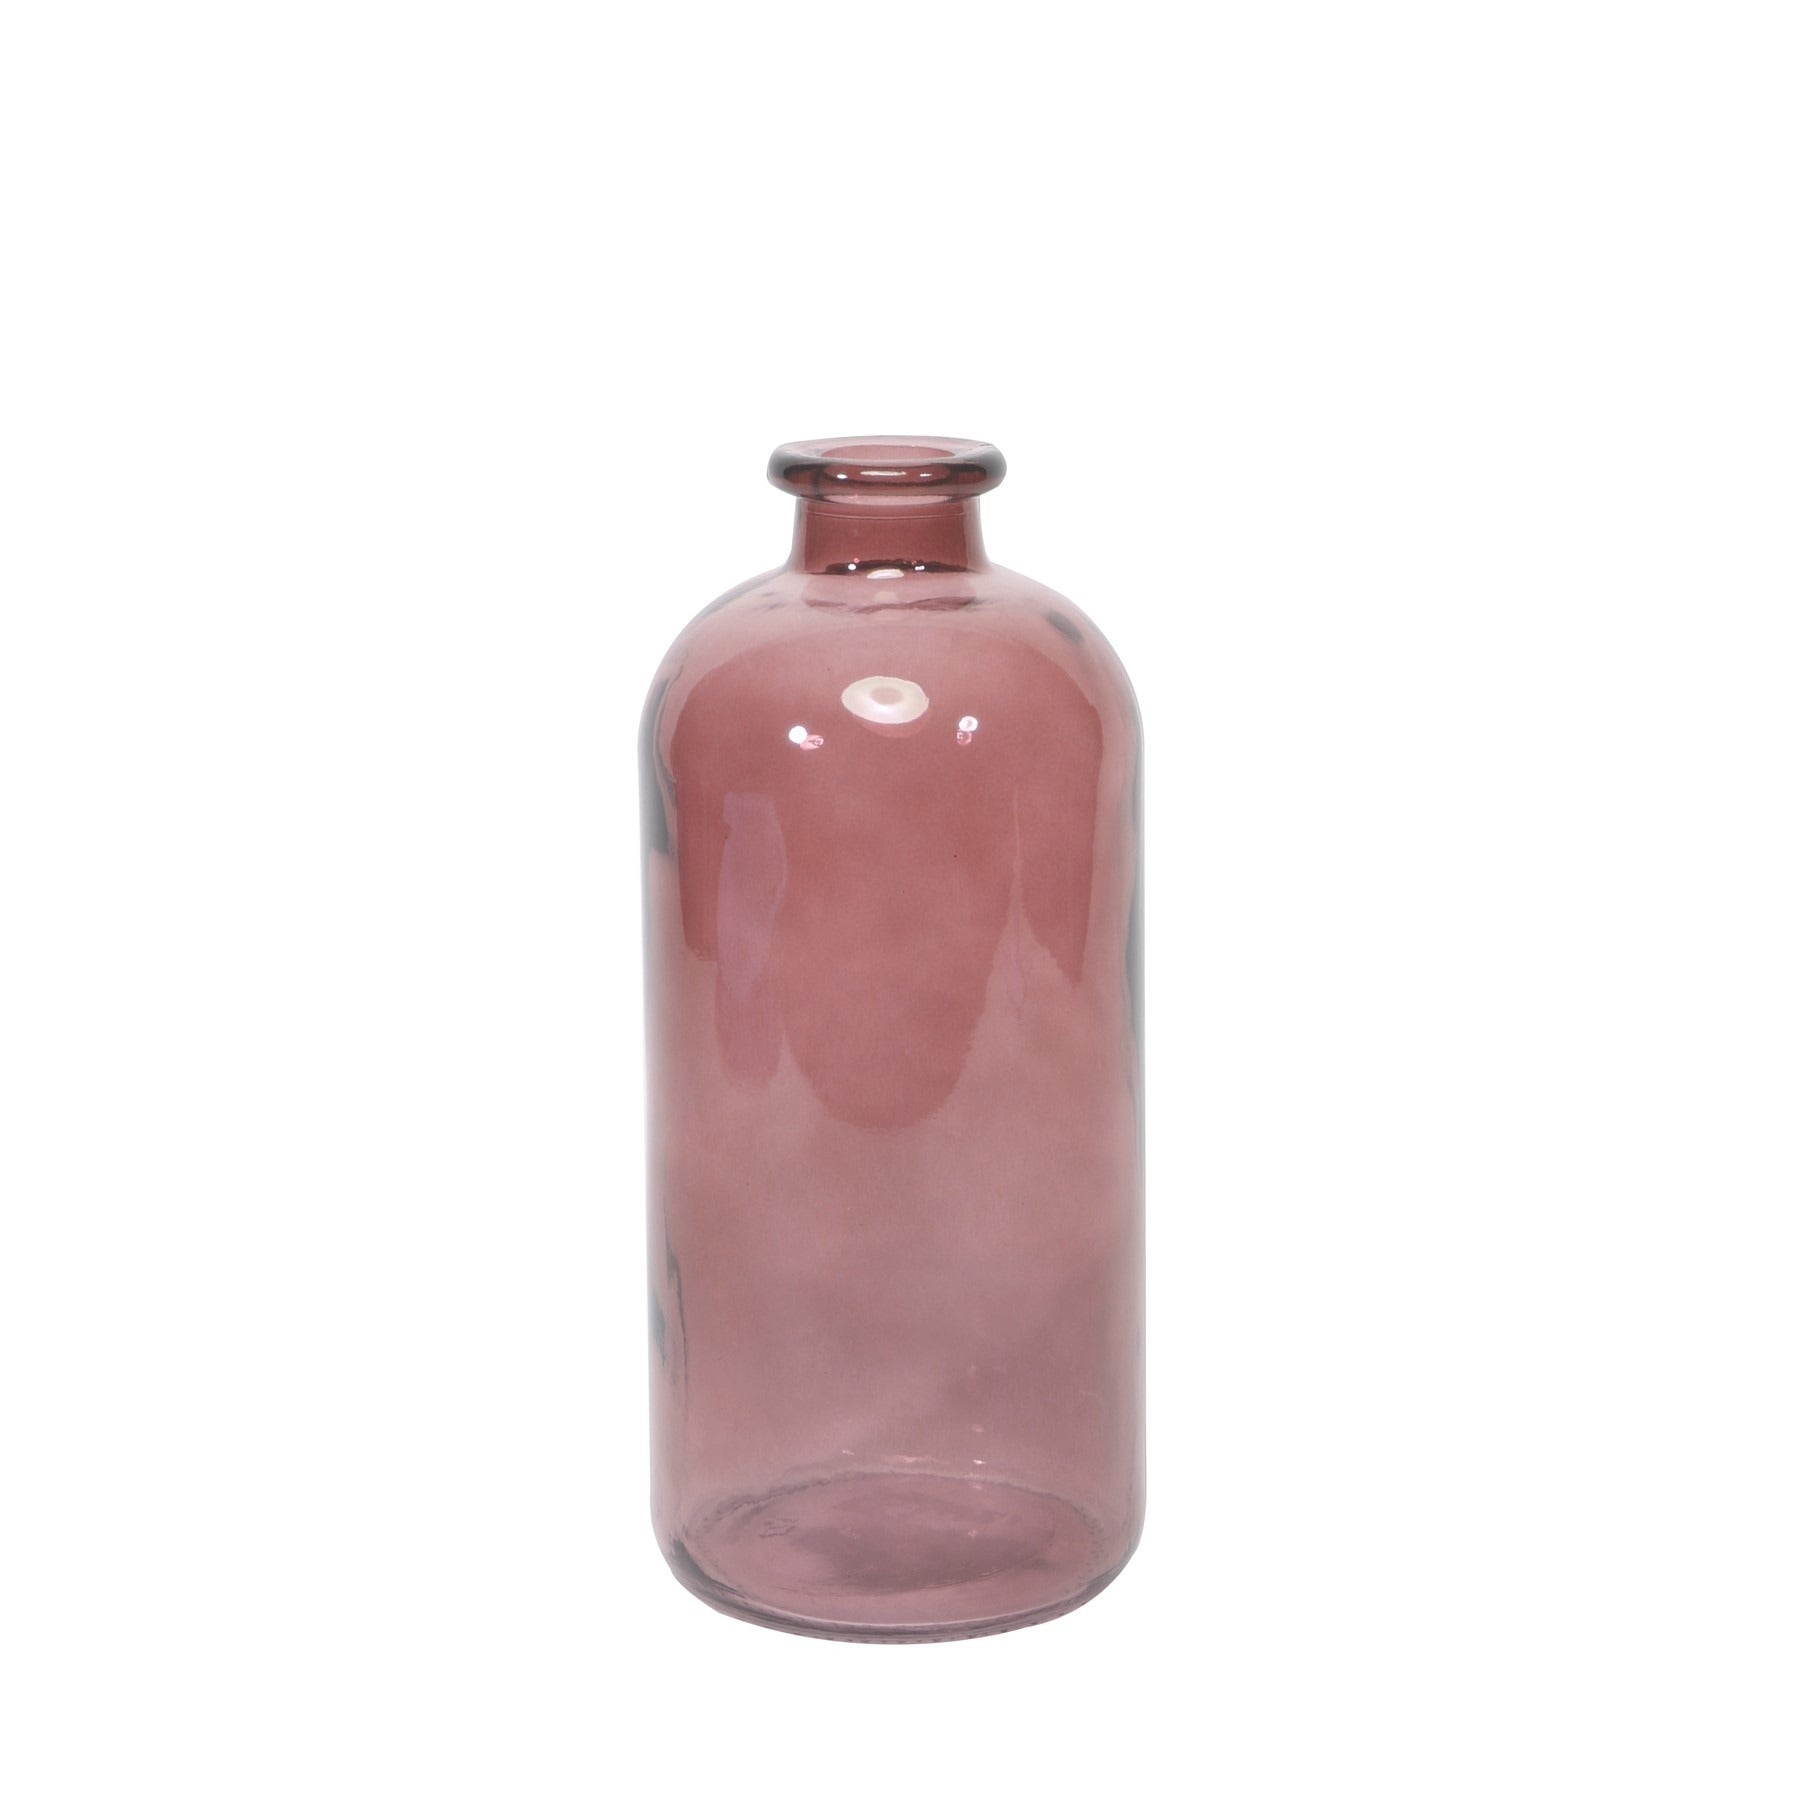 View Leon Bottle Dusky Pink 25cm x 11cm information